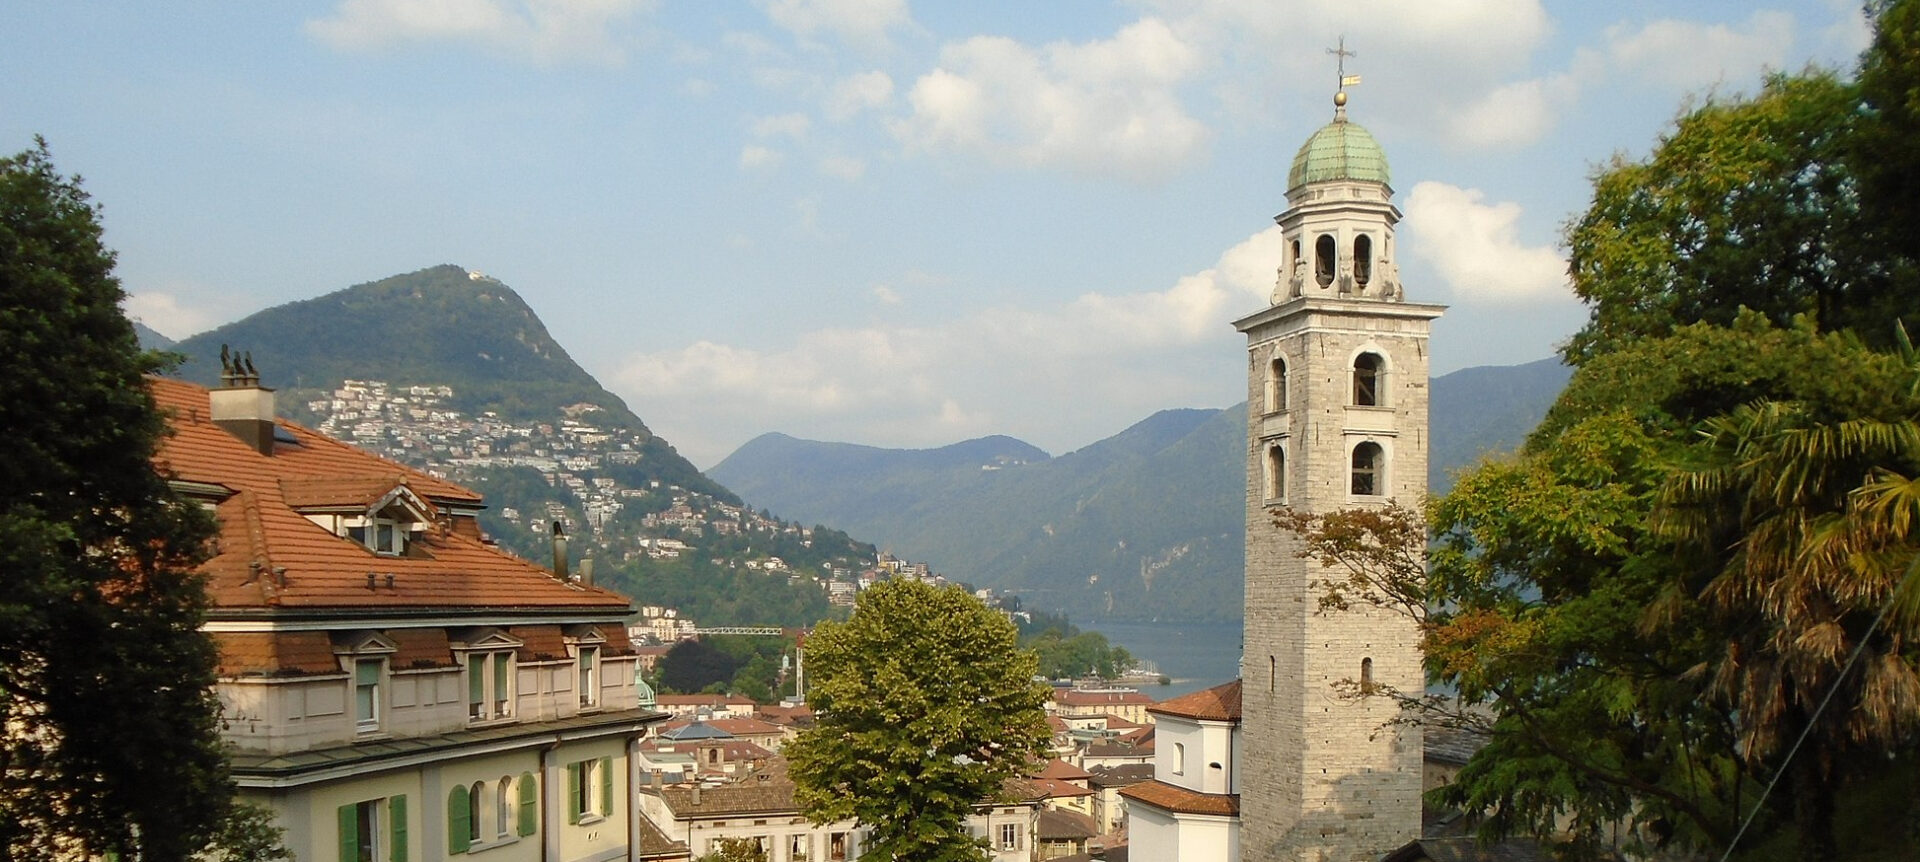 Les règles de nomination de l'évêque de Lugano sont controversées | photo: clocher de la cathédrale San Lorenzo de Lugano © Wikimedia Commons